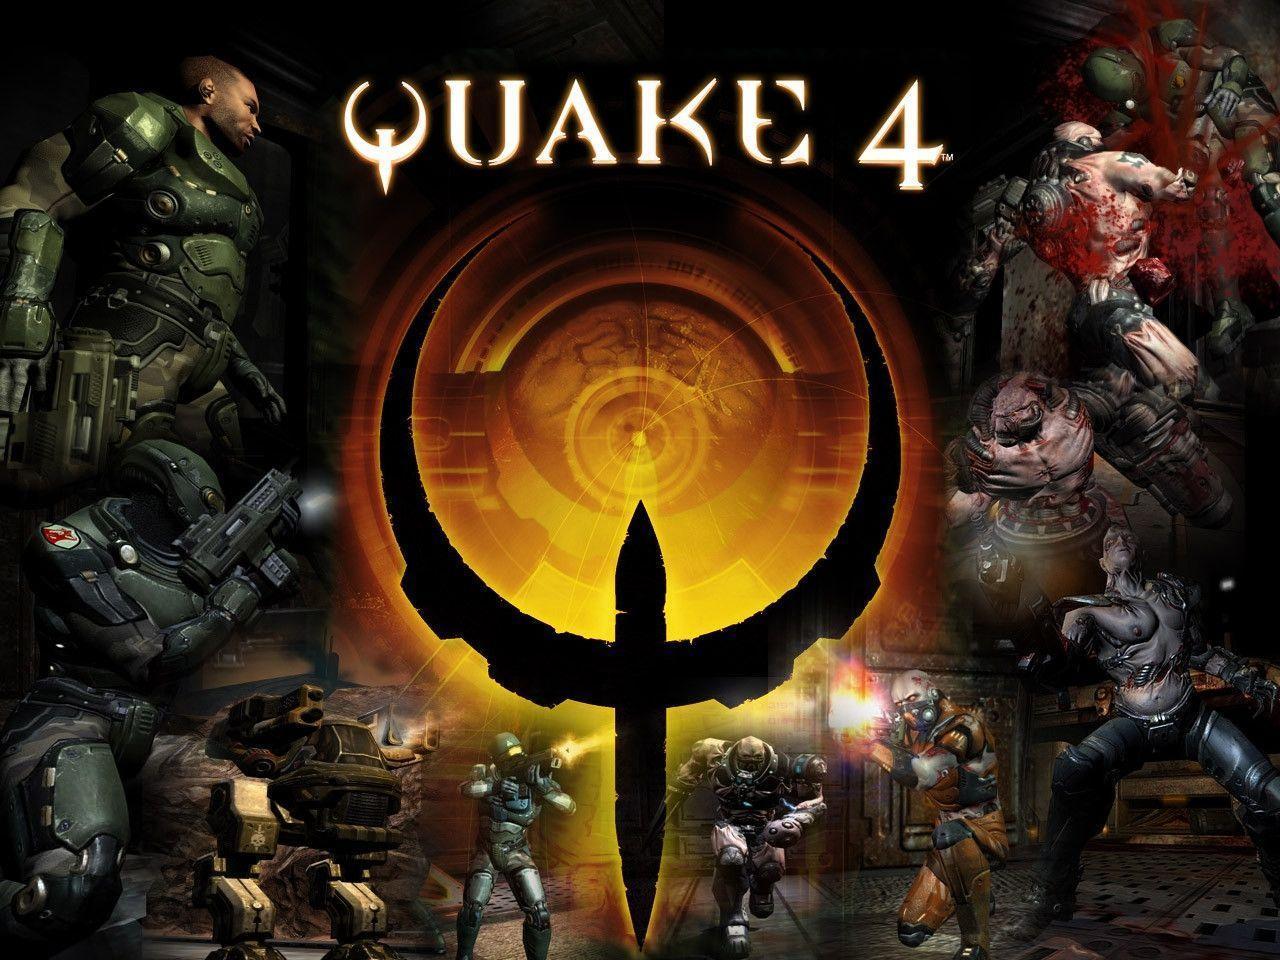 Quake 4. PC Games Archive